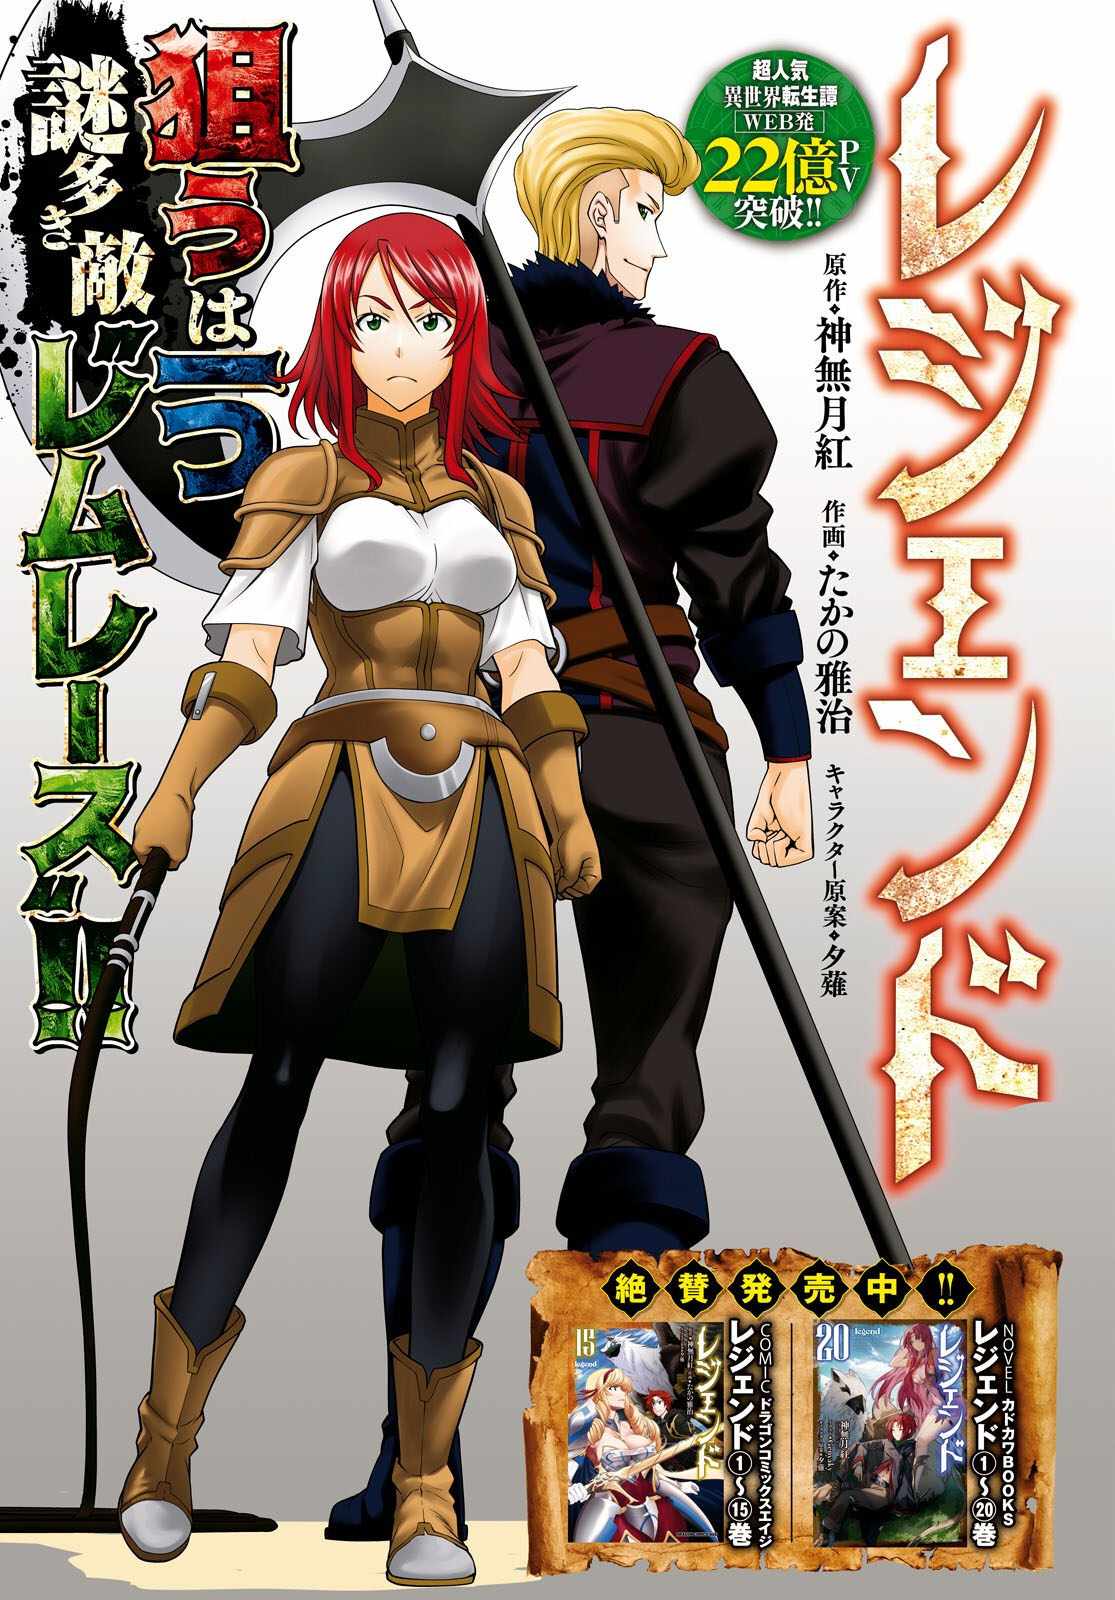 read Legend (TAKANO Masaharu) Chapter 97 Manga Online Free at Mangabuddy, MangaNato,Manhwatop | MangaSo.com